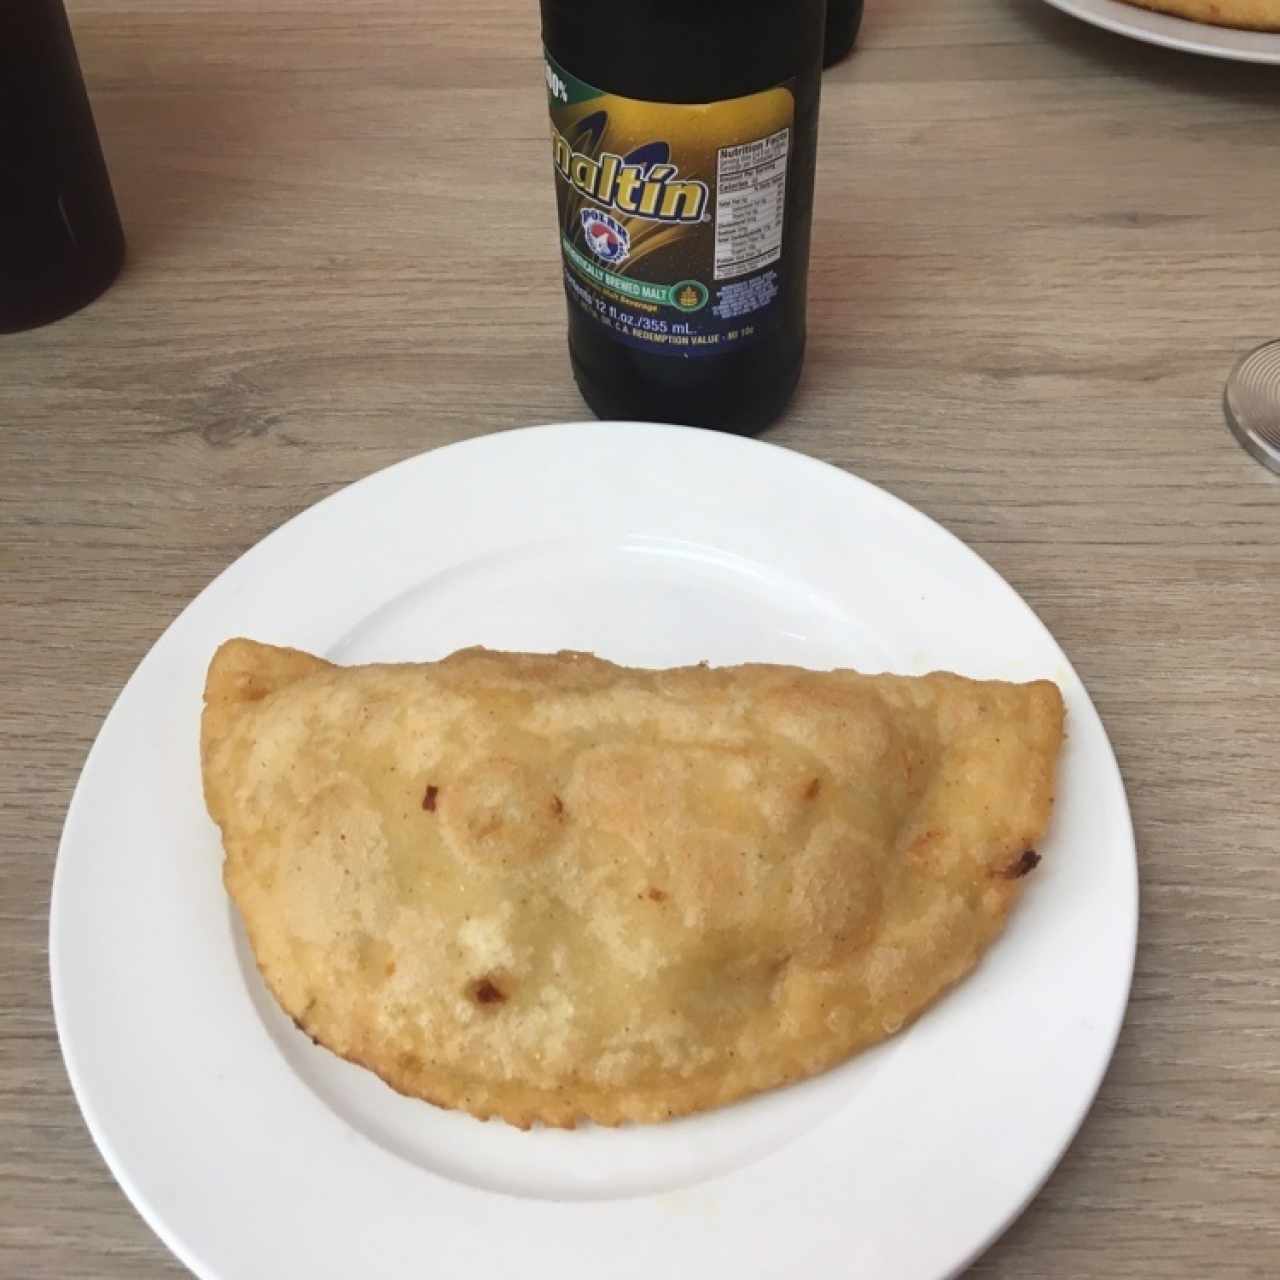 Desayunos - Empanadas